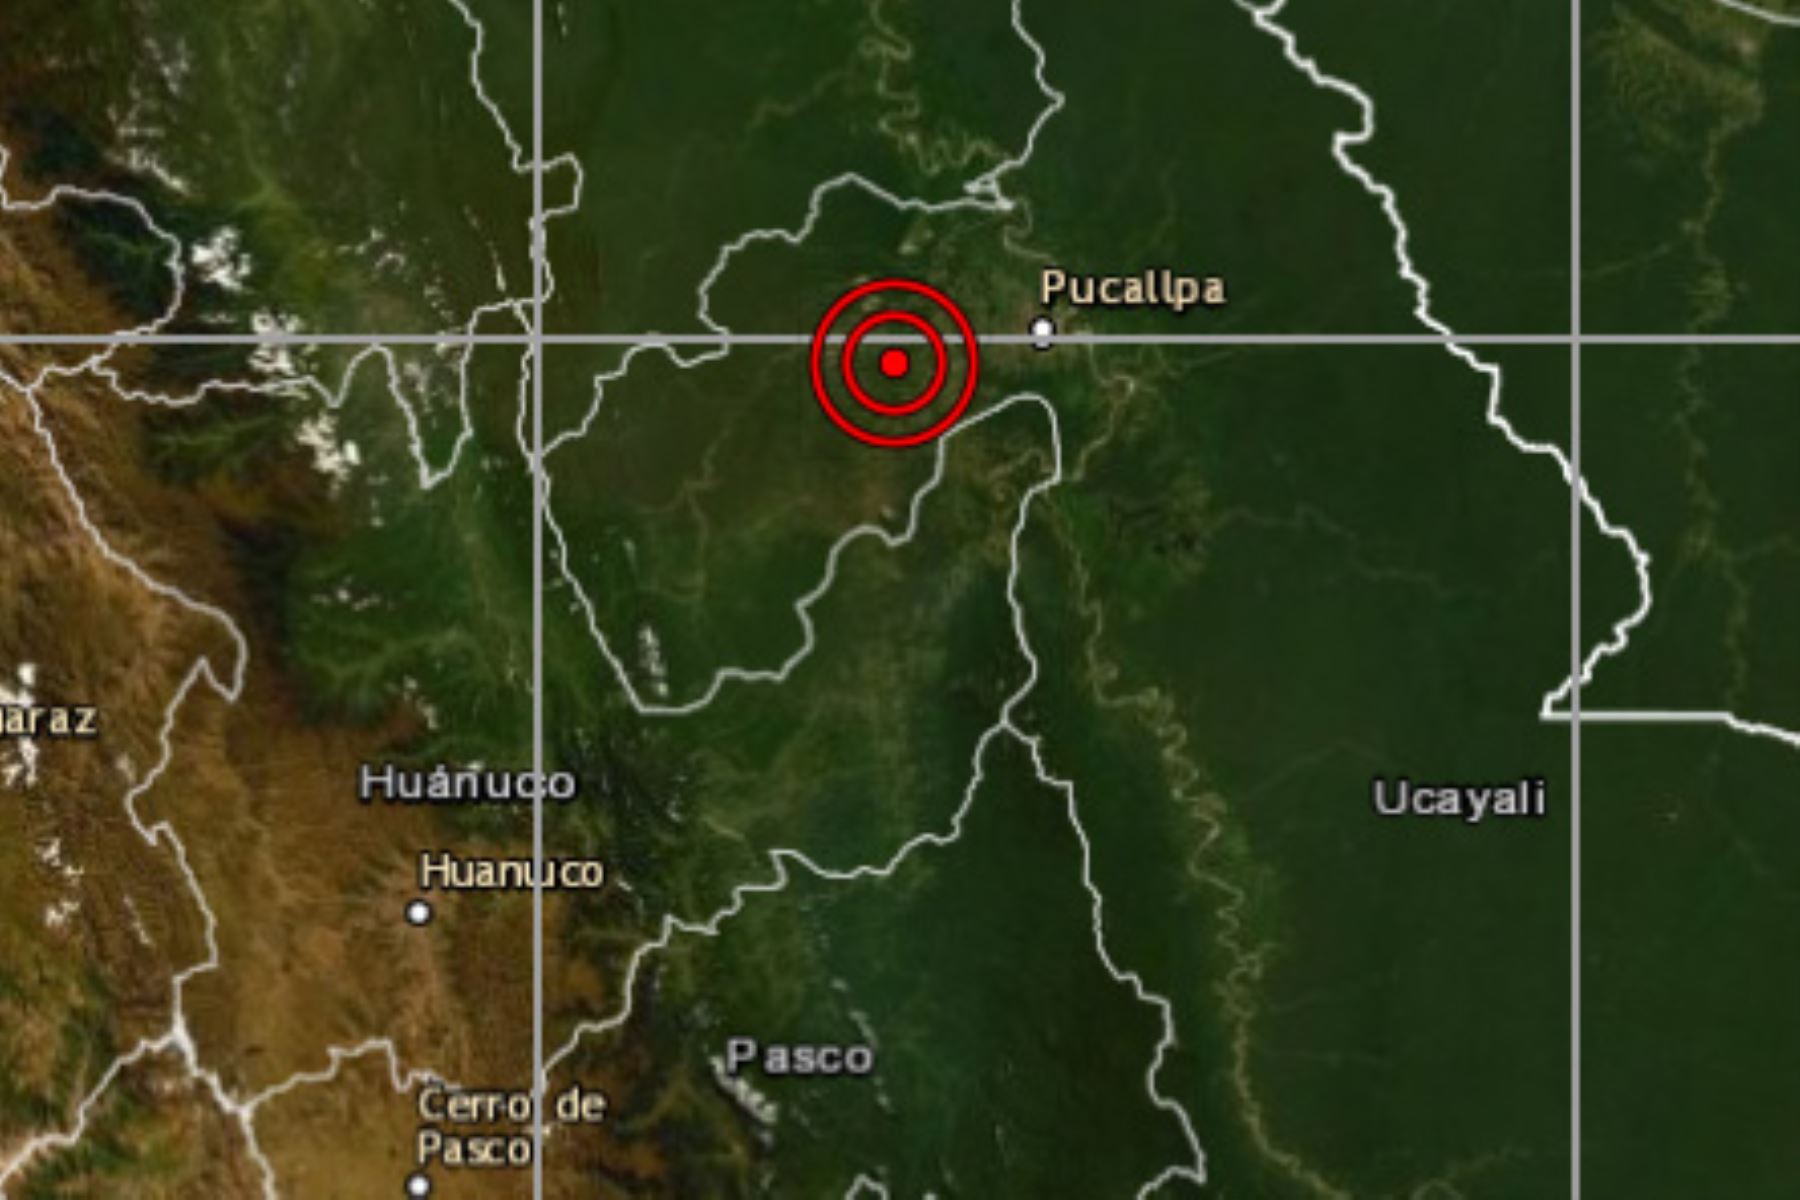 El Instituto Geofísico del Perú reportó un movimiento sísmico de magnitud 4.8 en la provincia de Padre Abad, región Ucayali.